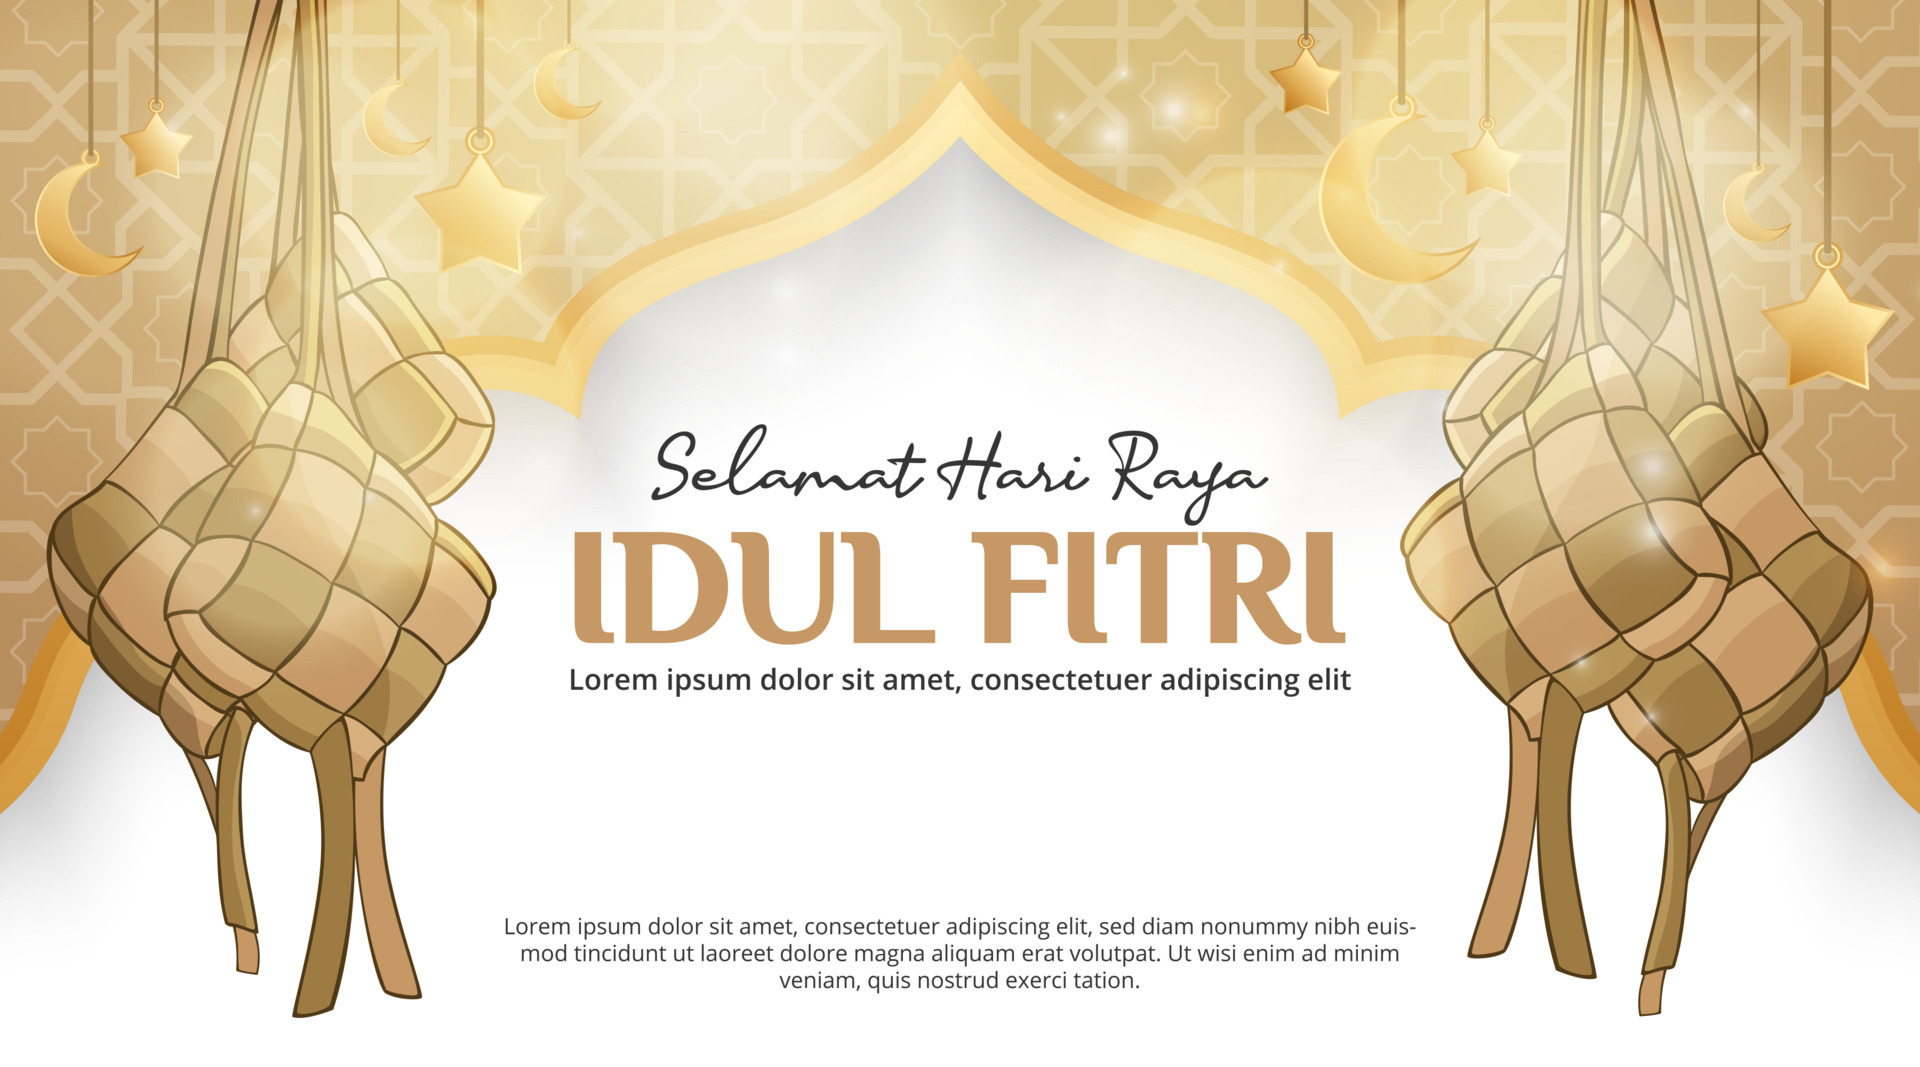 Selamat Hari Raya Idul Fitri Or Happy Eid Al Fitr Background With